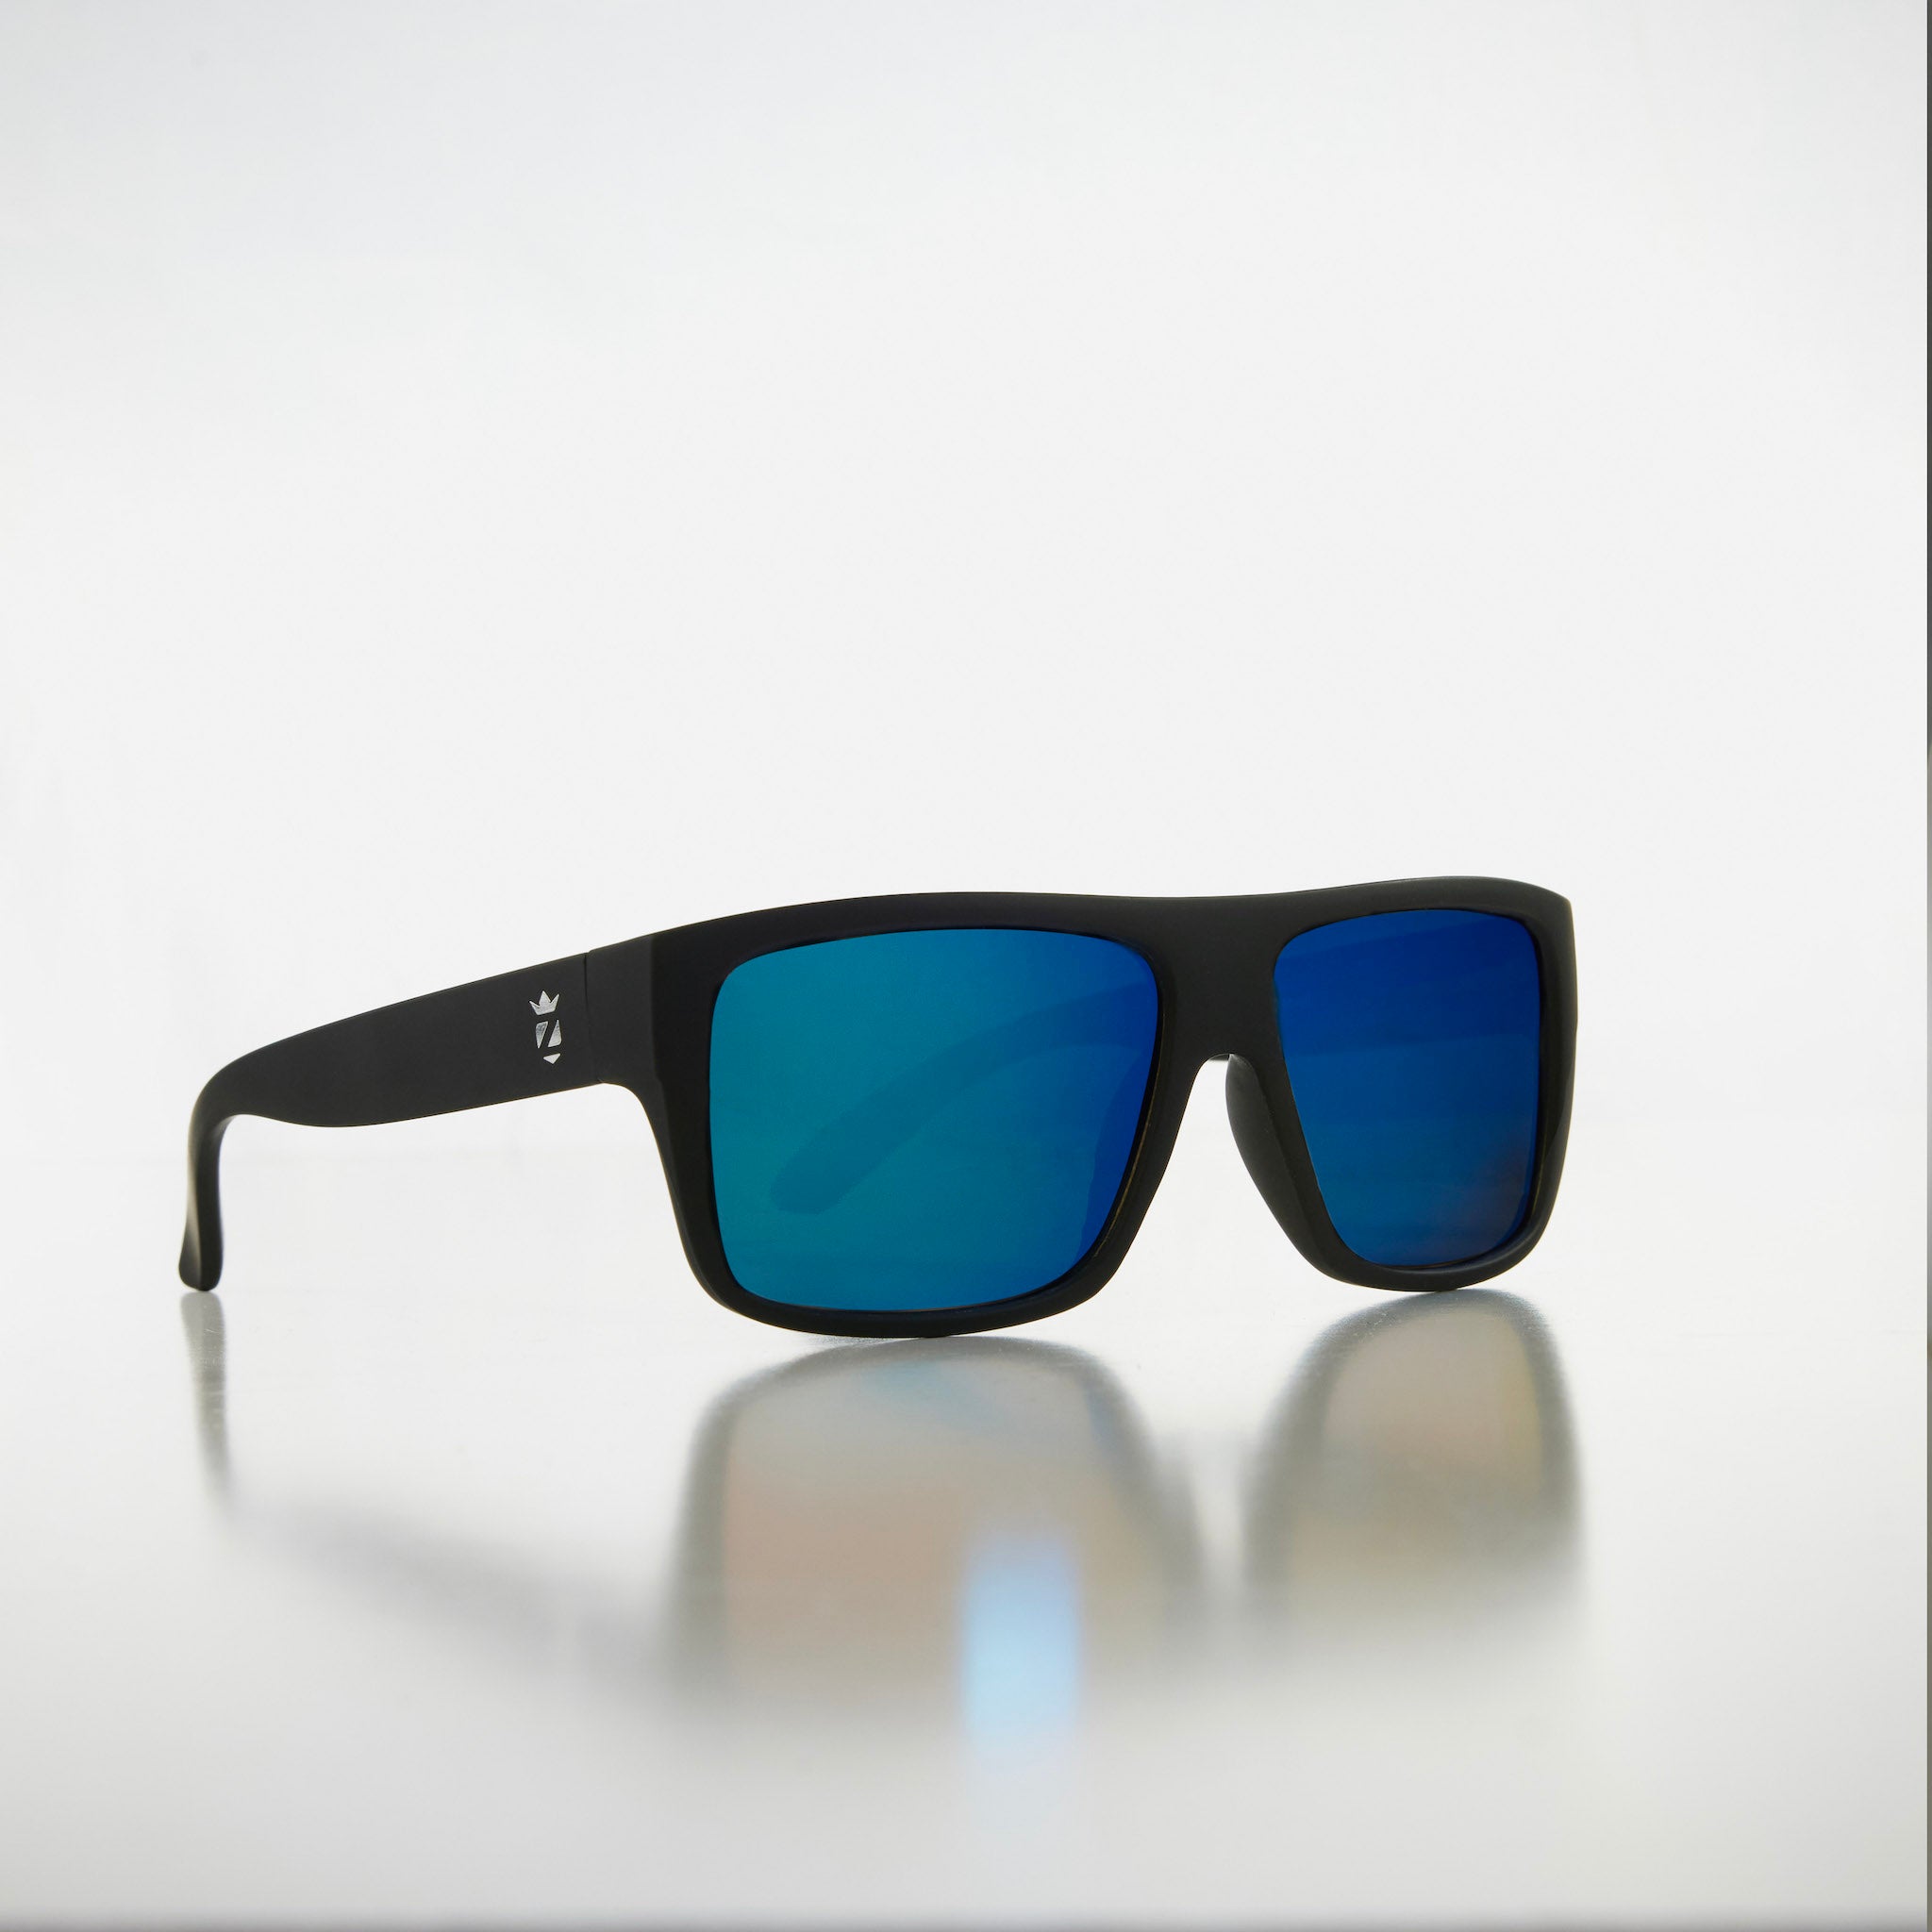 black frame sunglasses with blue lenses studio shot